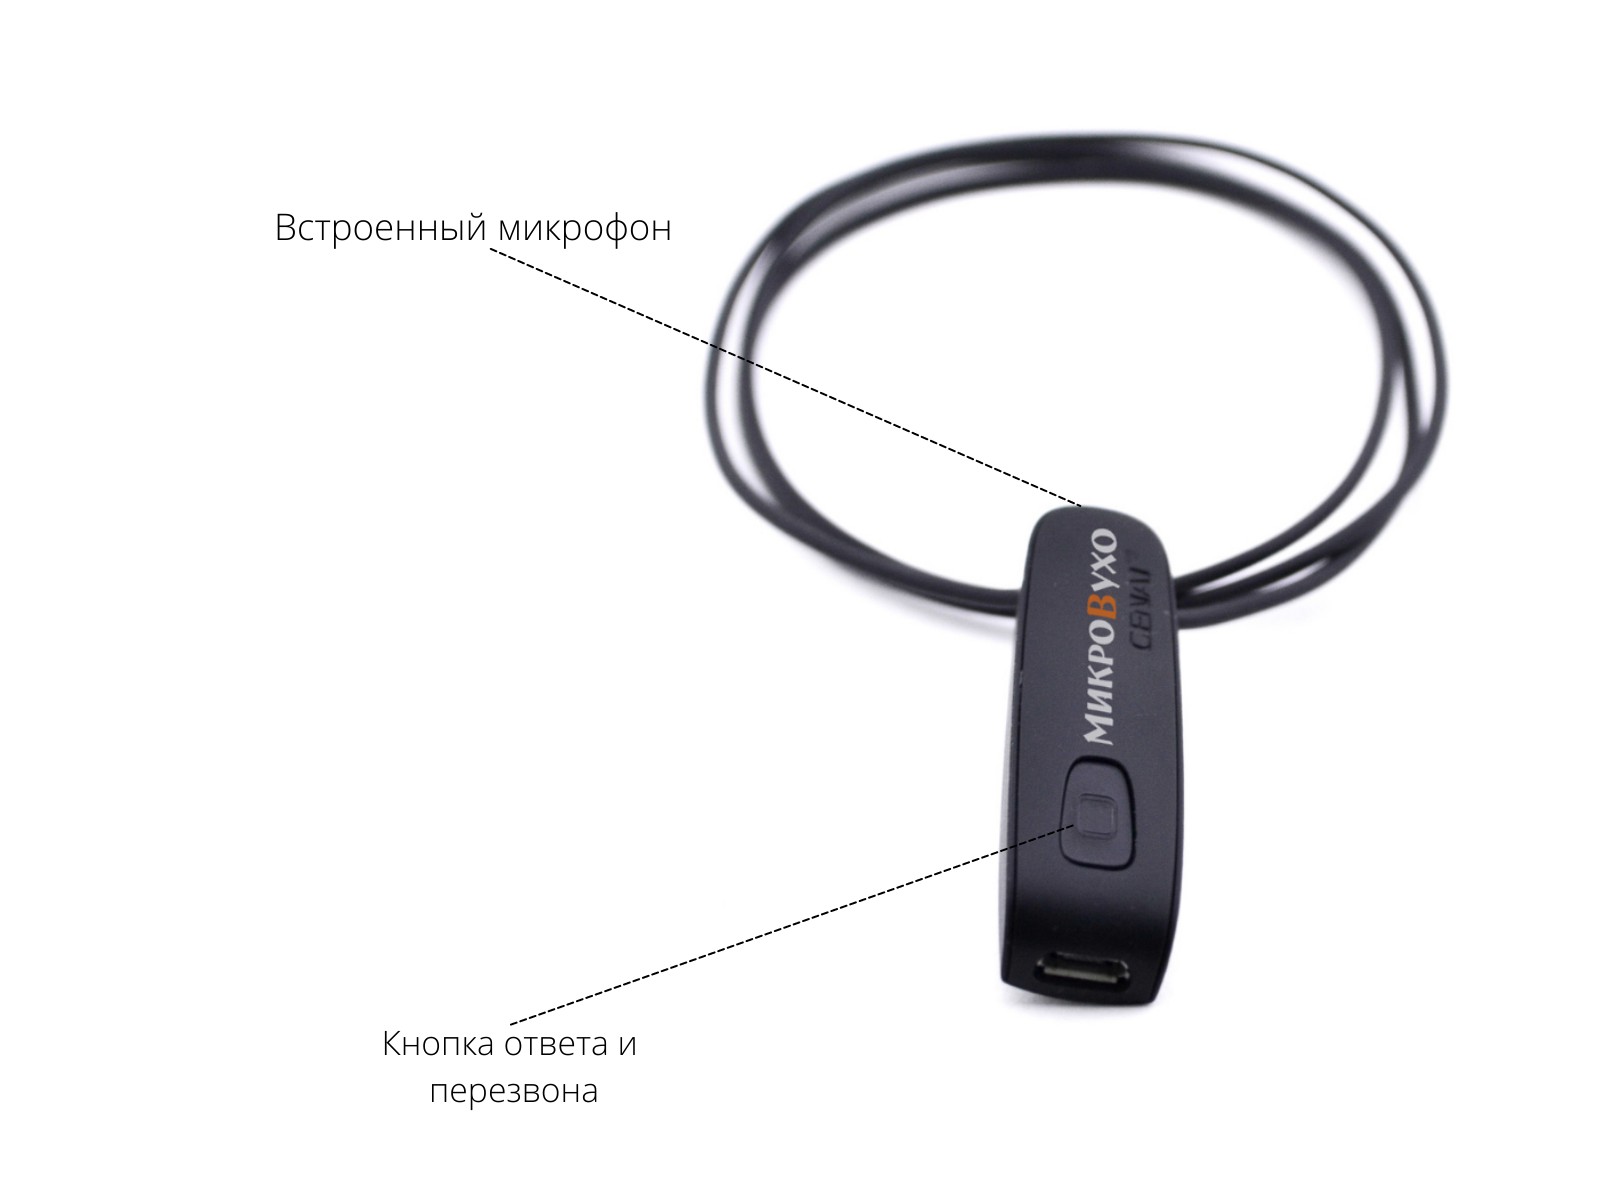 Универсальная гарнитура Bluetooth Basic с капсулой K5 4 мм и магнитами 2 мм - изображение 17